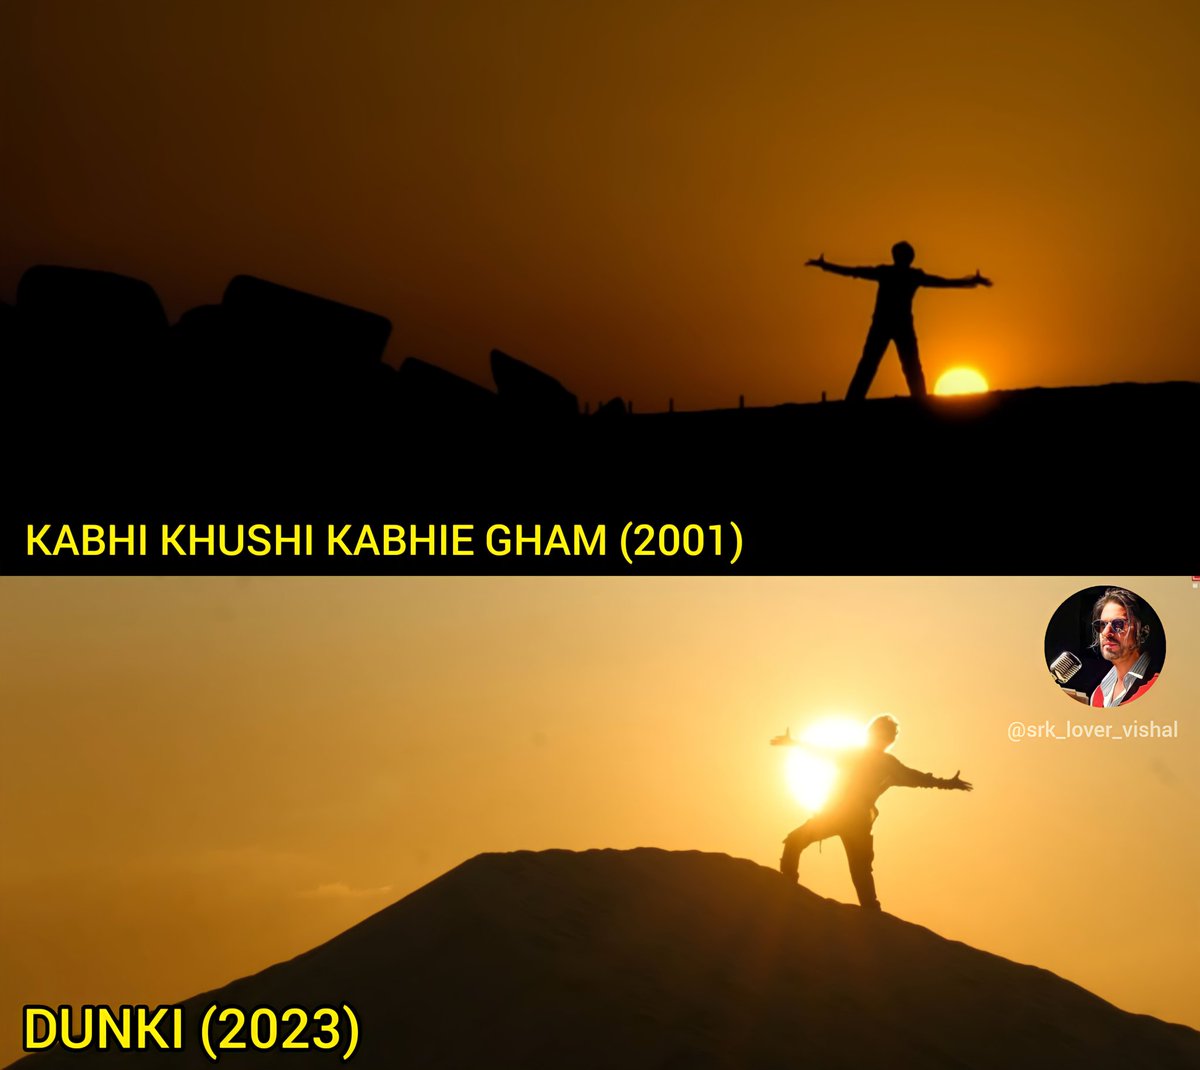 Those Iconic Signature Pose of SRK in #Dunki reminds me of  #KabhiKhushiKabhieGham vibes.𓀠🌄

#ShahRukhKhan𓀠 #OMaahi  #srklovervishal